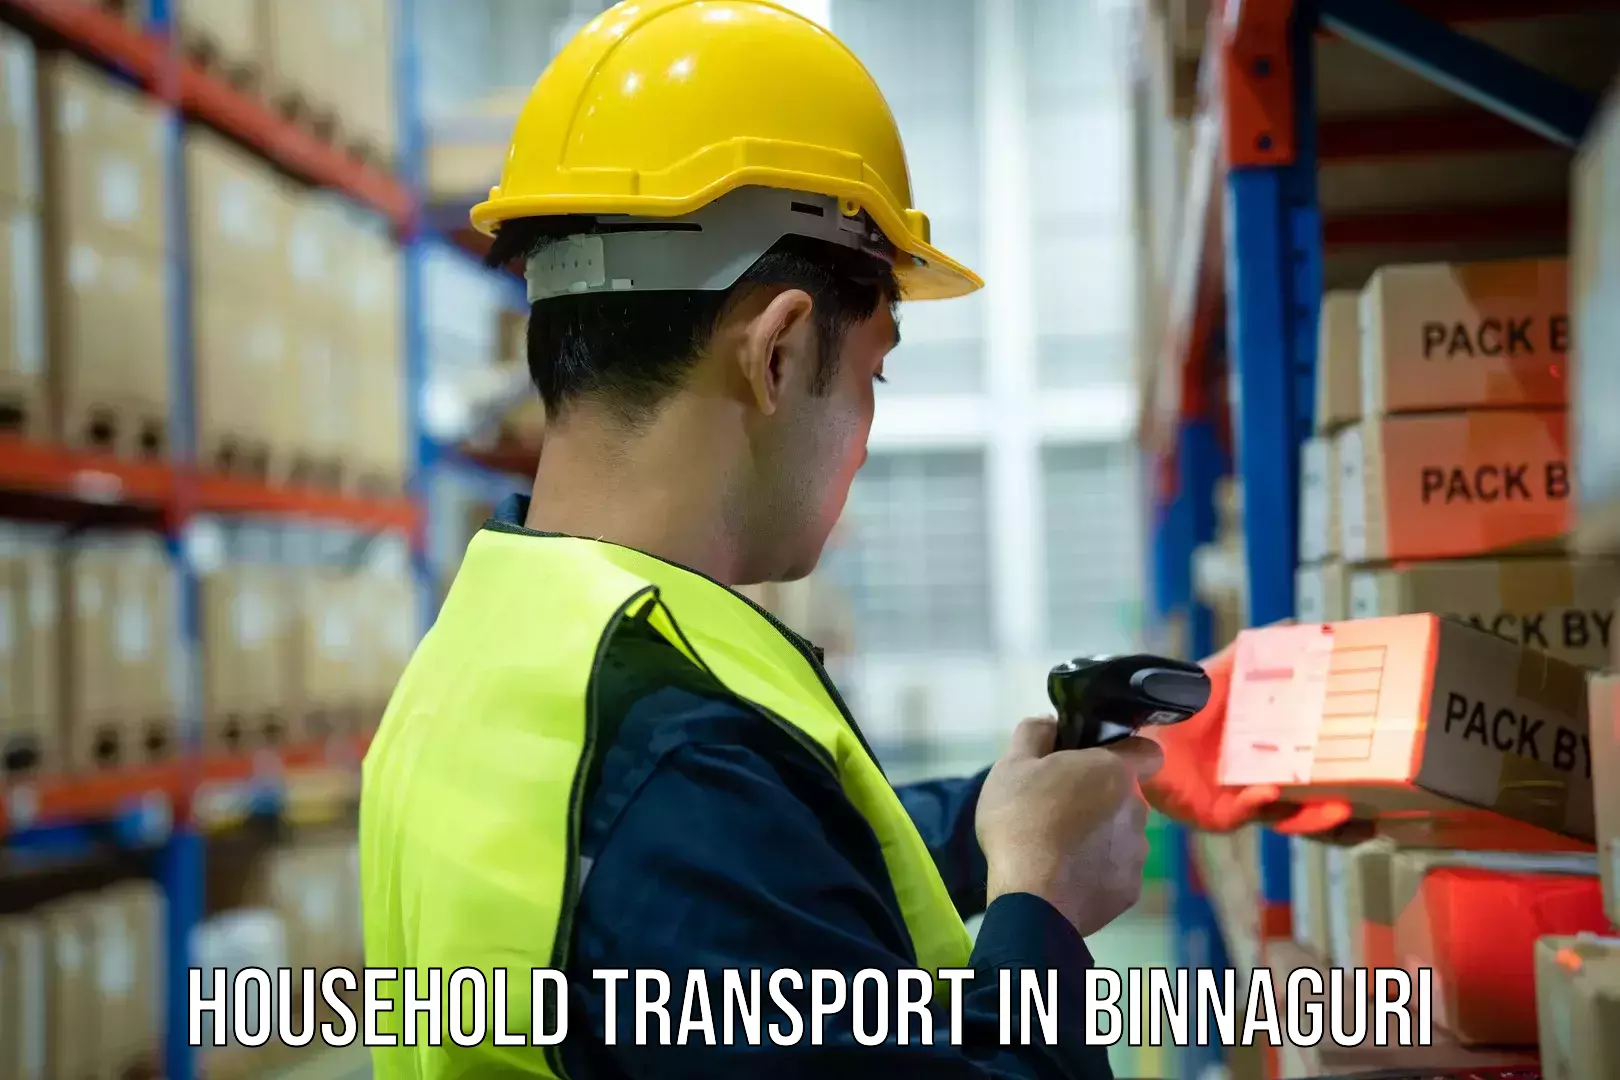 Professional goods transport in Binnaguri